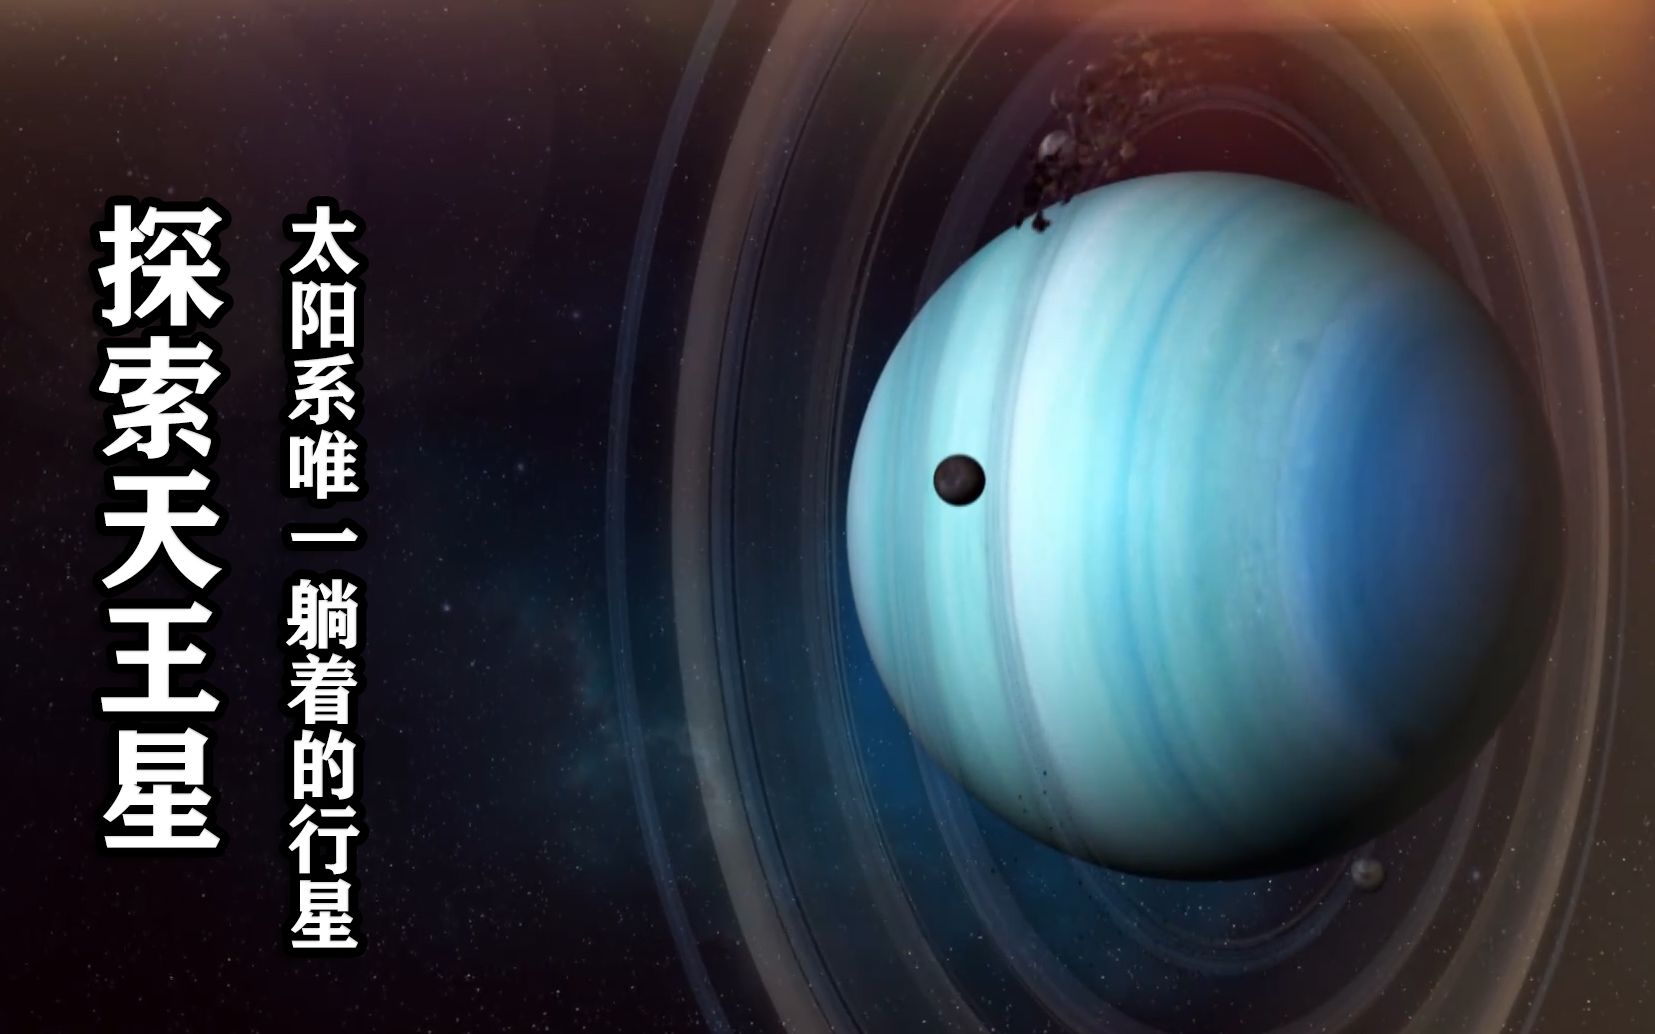 探索天王星:太阳系惨行星,曾遭连环撞击,至今仍倒在太阳系中